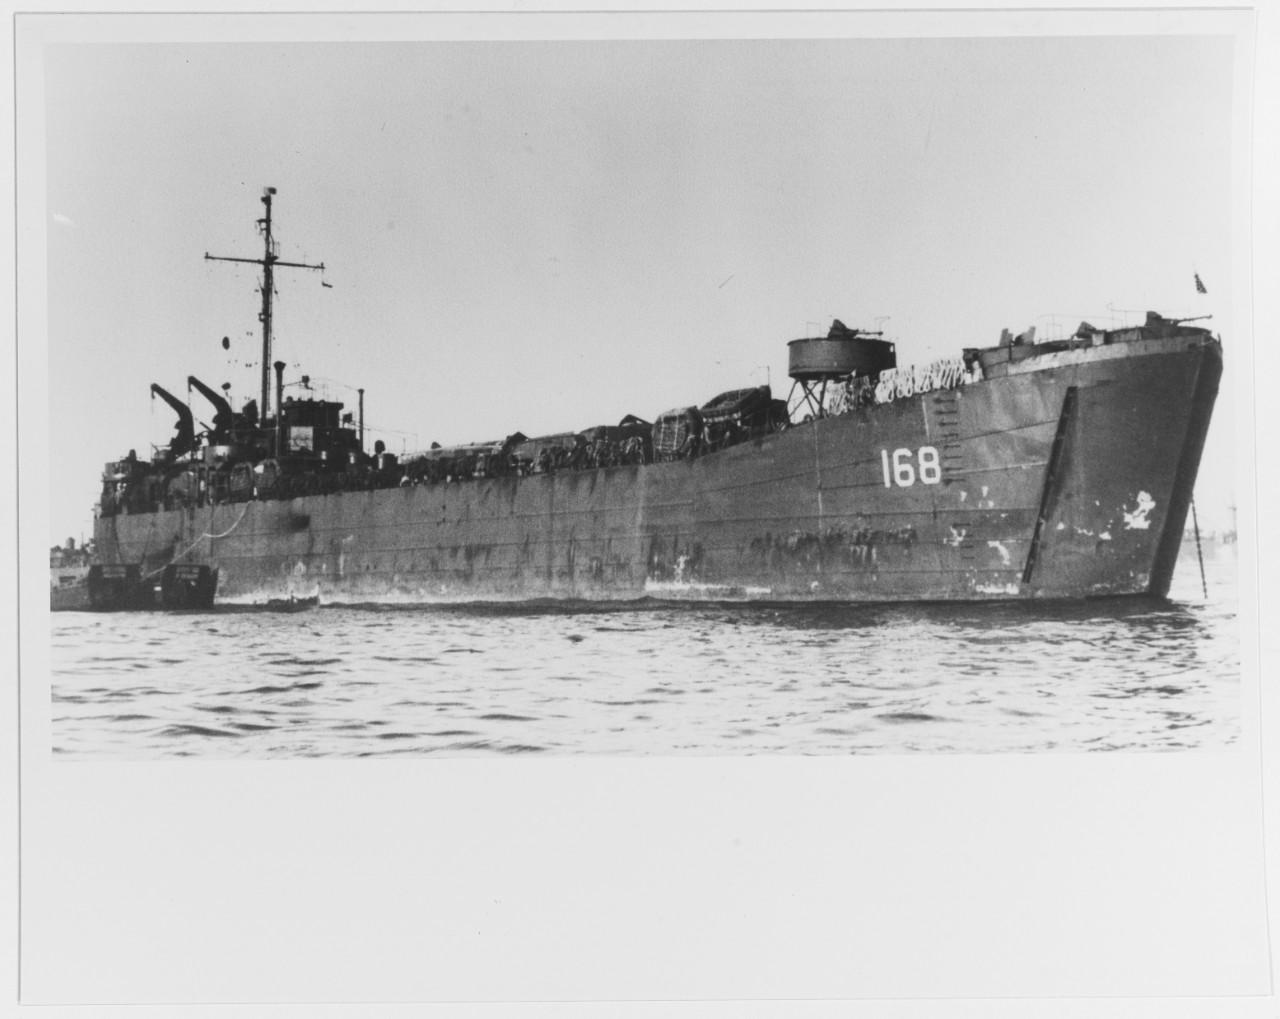 USS LST-168